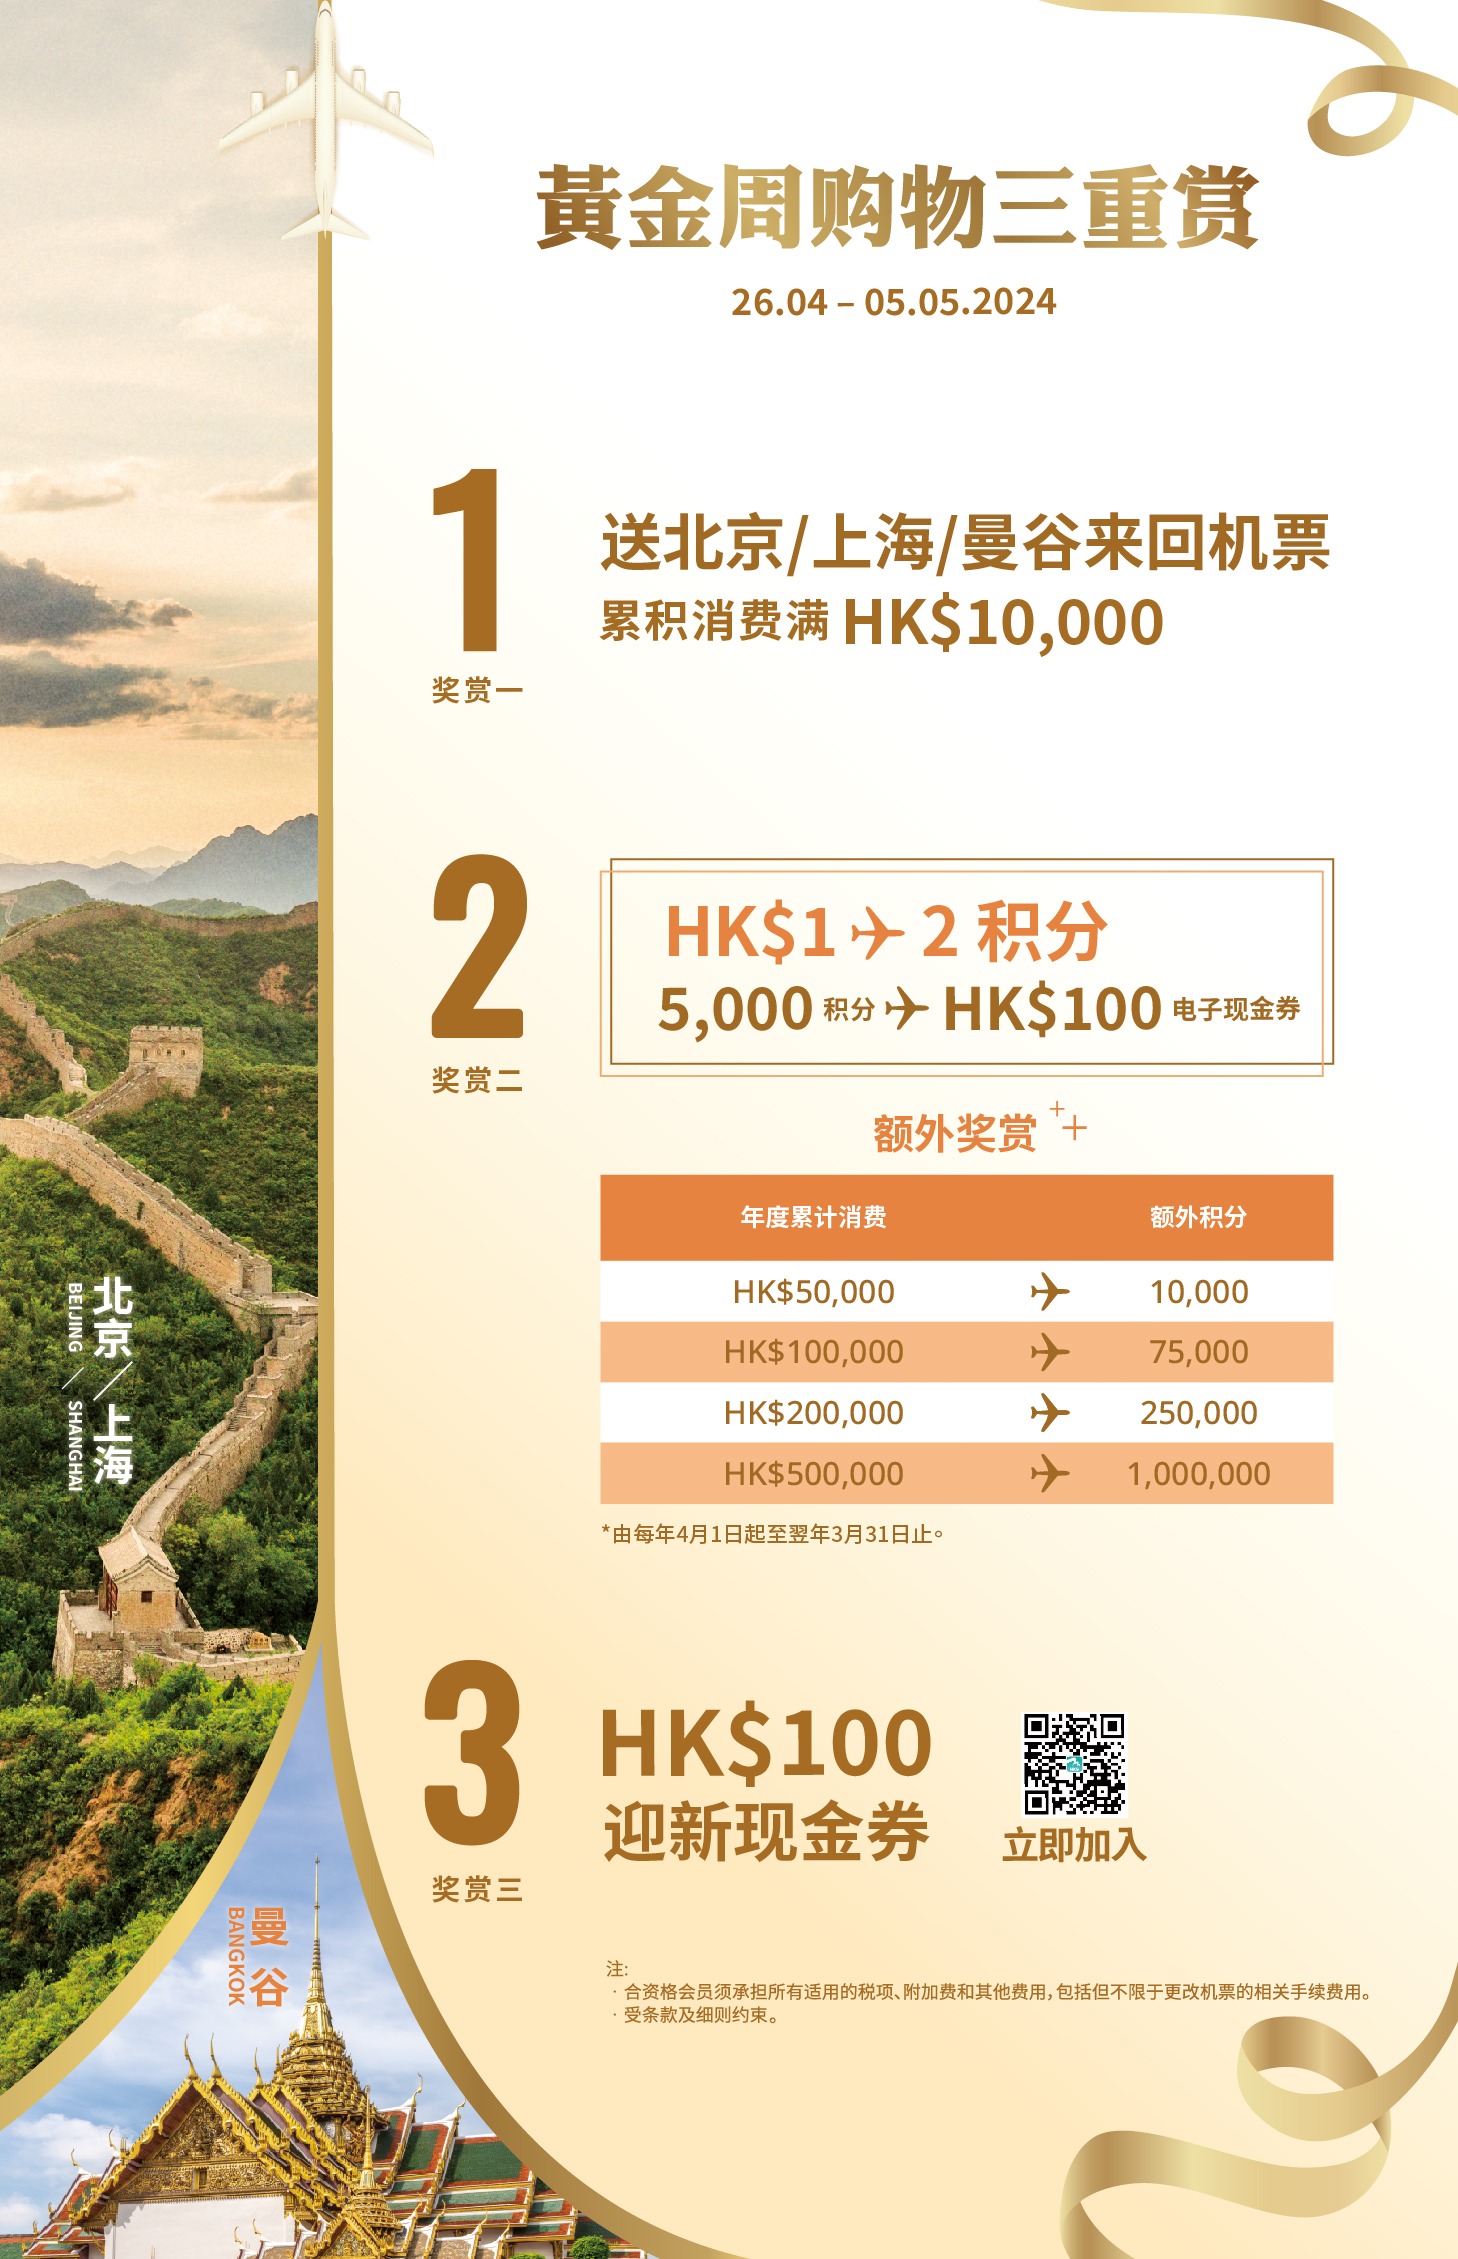 香港國際機場為「HKairport Rewards」會員推出黃金周三重獎賞